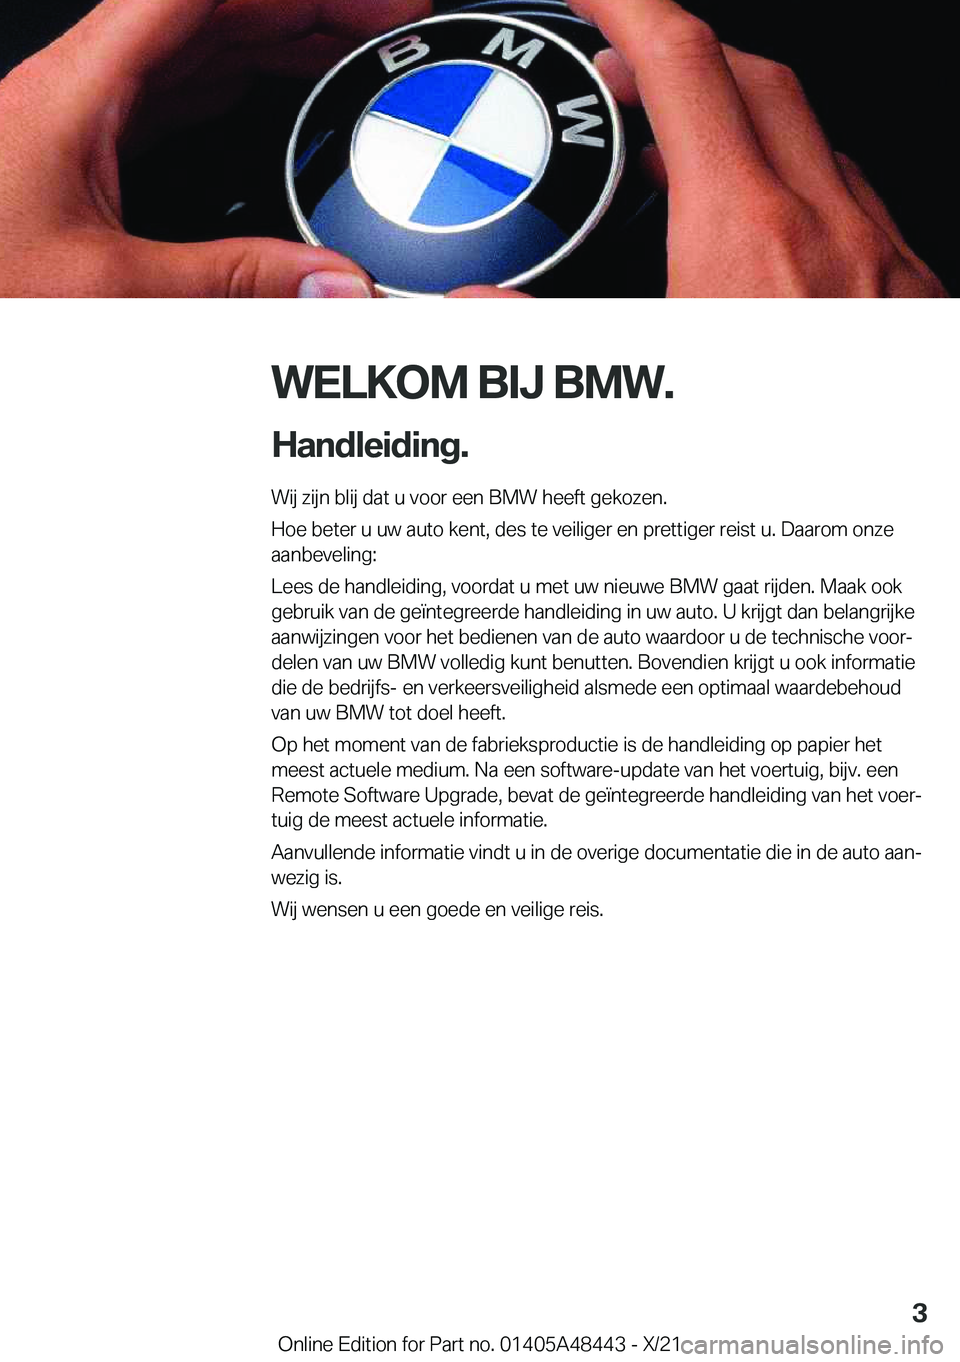 BMW X7 2022  Instructieboekjes (in Dutch) �W�E�L�K�O�M��B�I�J��B�M�W�.
�H�a�n�d�l�e�i�d�i�n�g�. �W�i�j��z�i�j�n��b�l�i�j��d�a�t��u��v�o�o�r��e�e�n��B�M�W��h�e�e�f�t��g�e�k�o�z�e�n�.
�H�o�e��b�e�t�e�r��u��u�w��a�u�t�o��k�e�n�t�